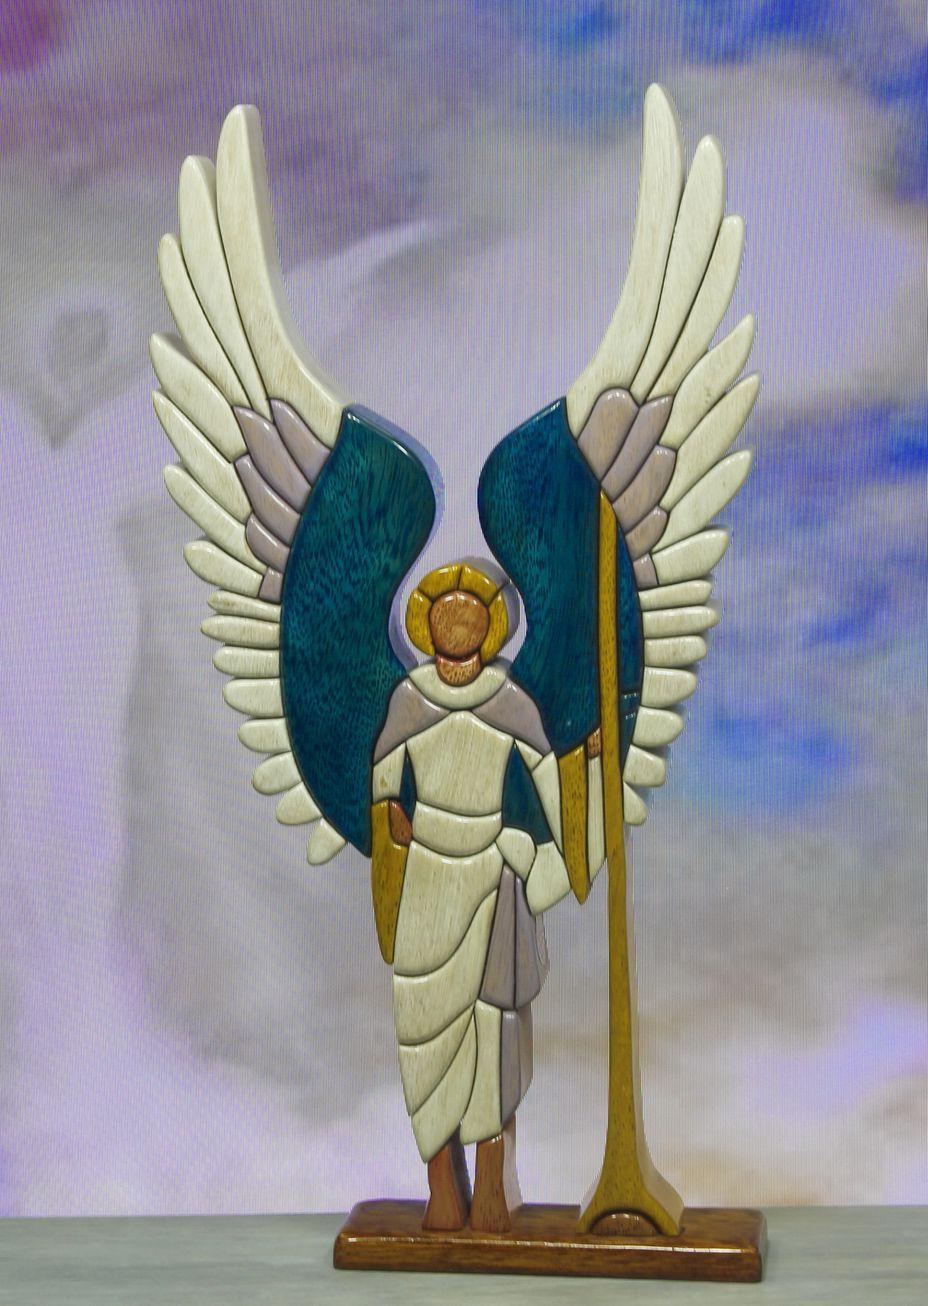 Angel Gabriel